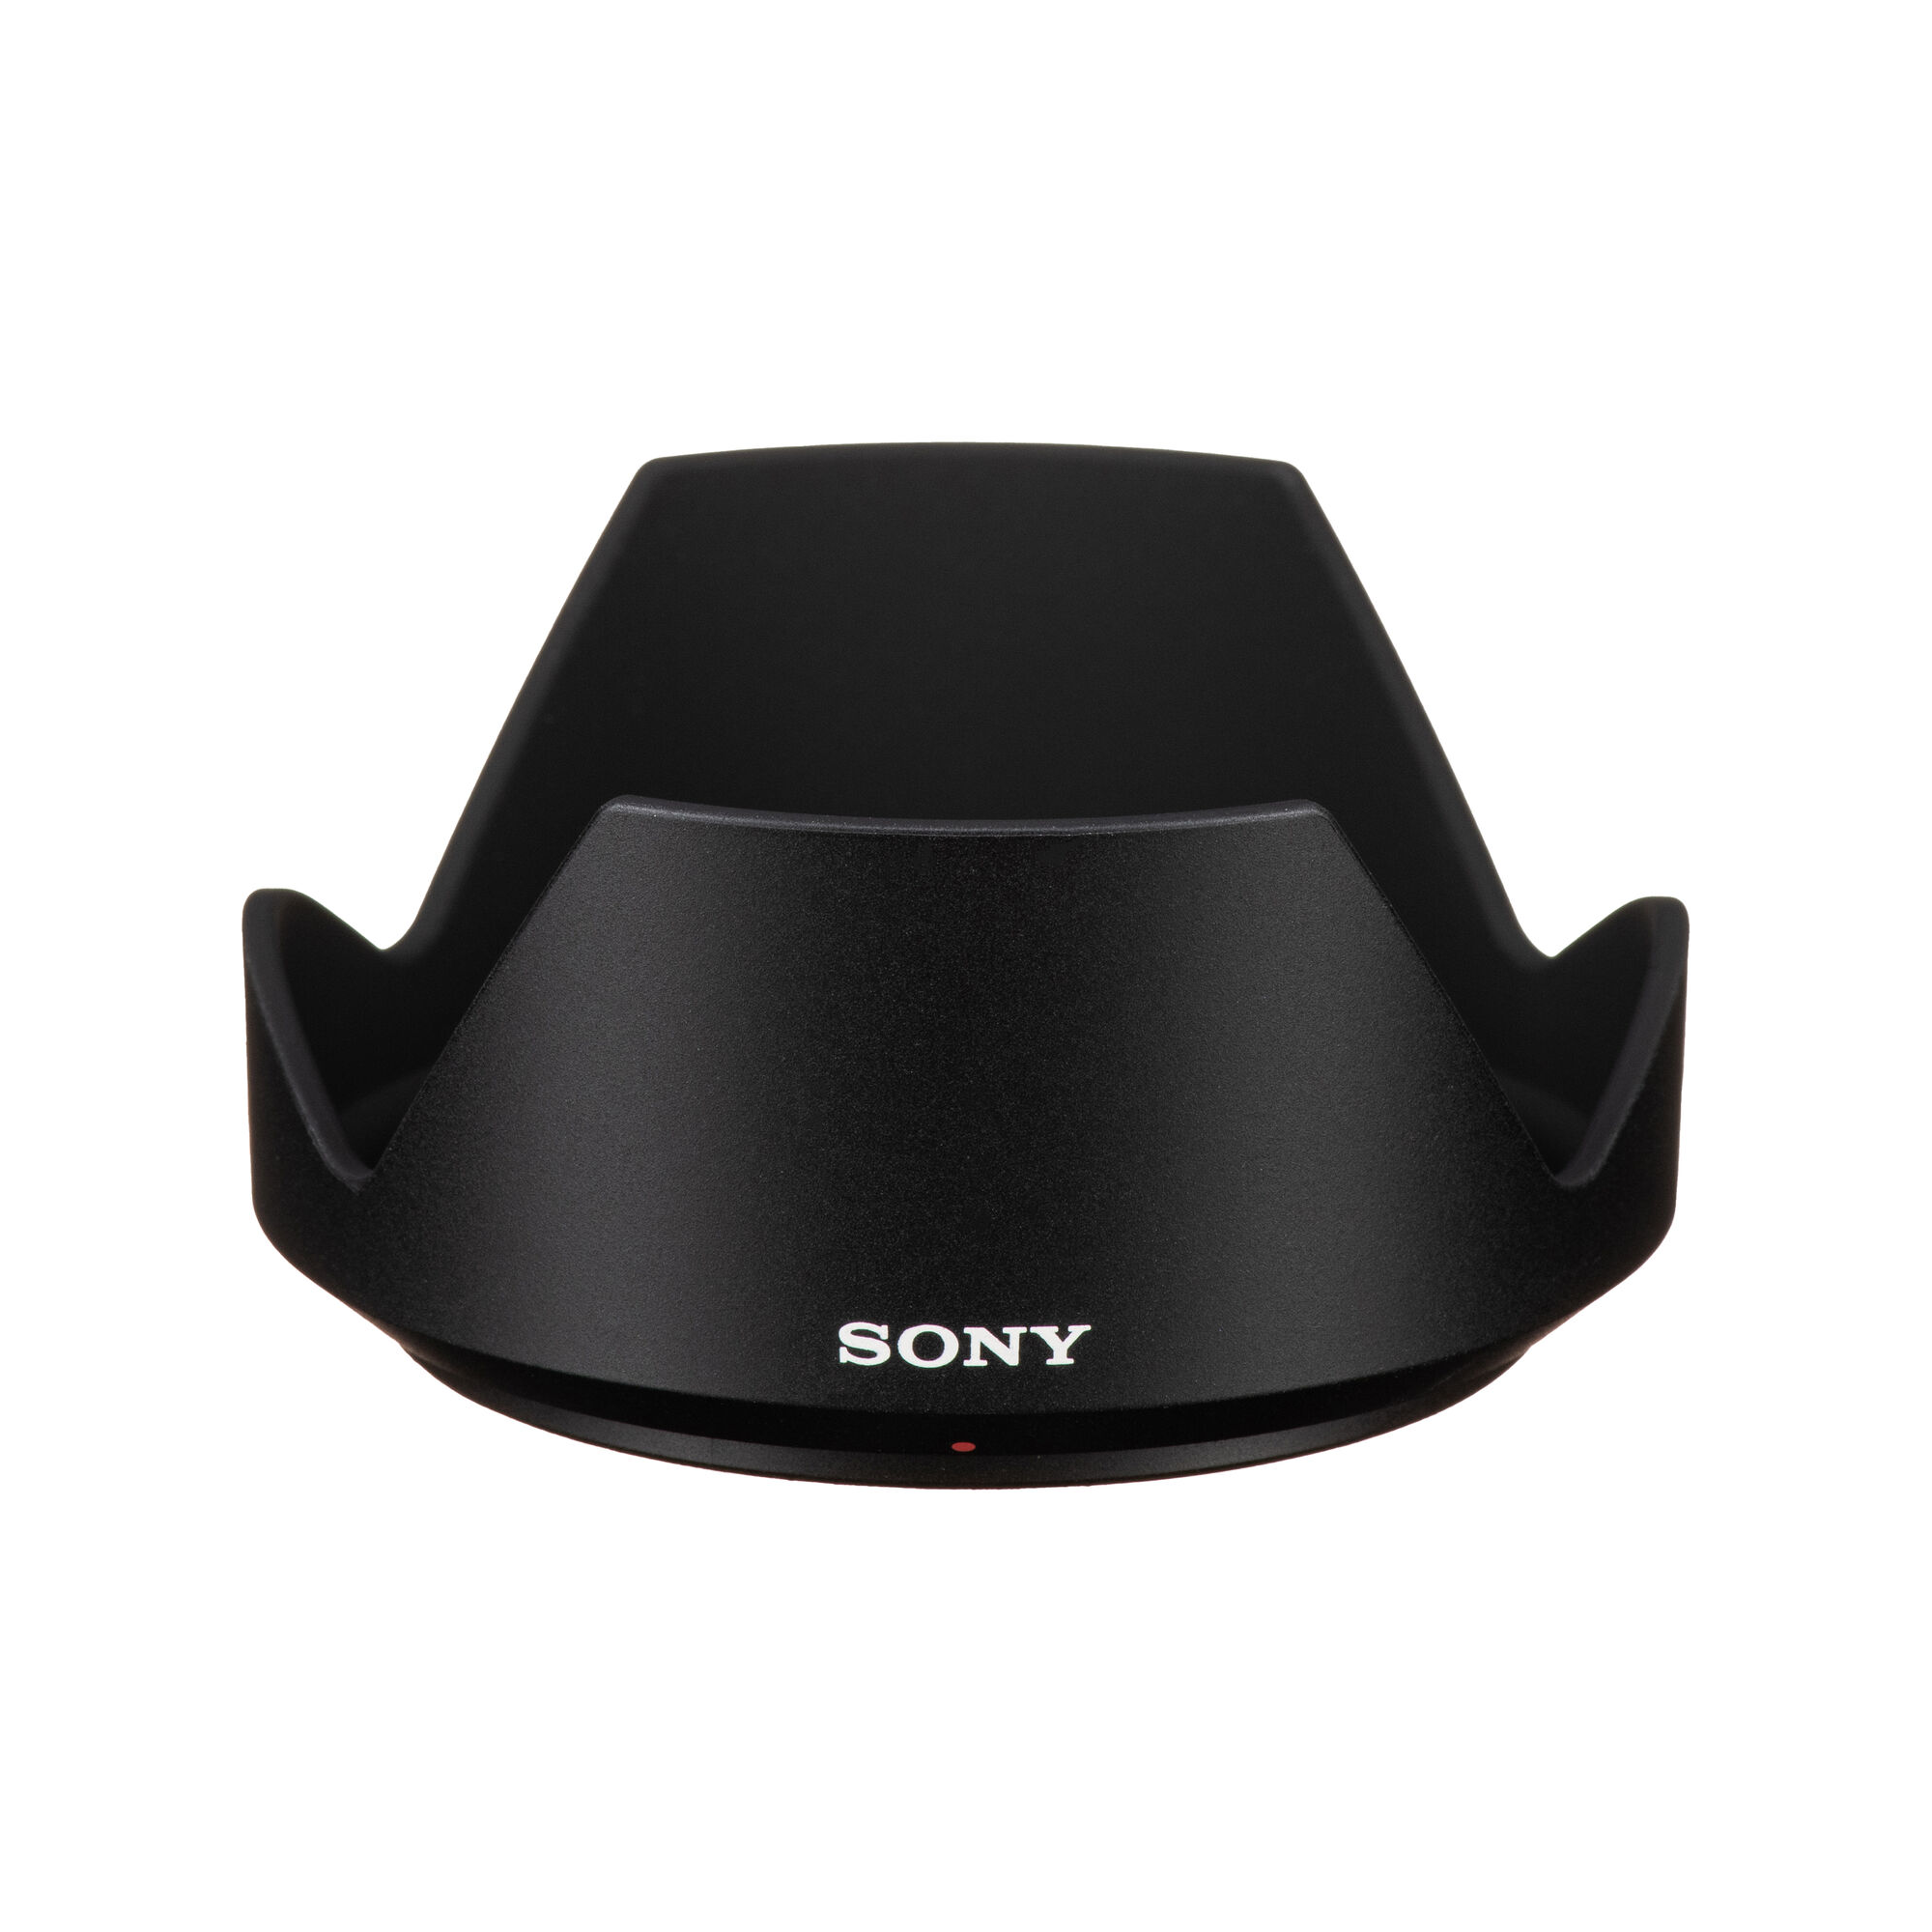 Sony Vario-Tessar T* E 16-70mm f/4 ZA OSS Lens